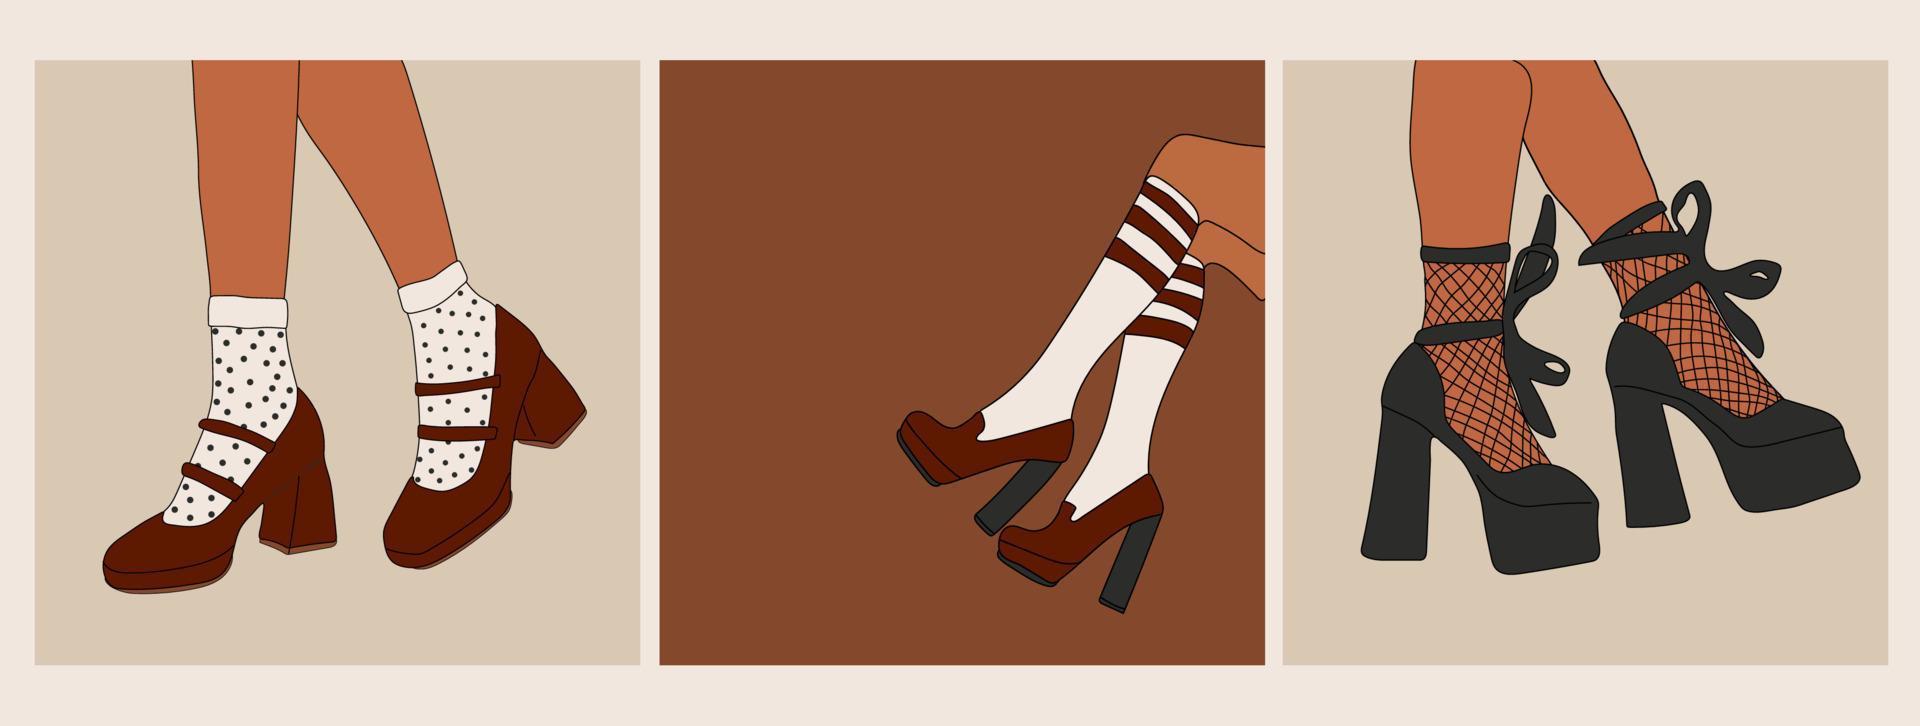 ensemble de femelle jambes dans élégant des chaussures avec talons et  dentelle chaussettes. mode et style